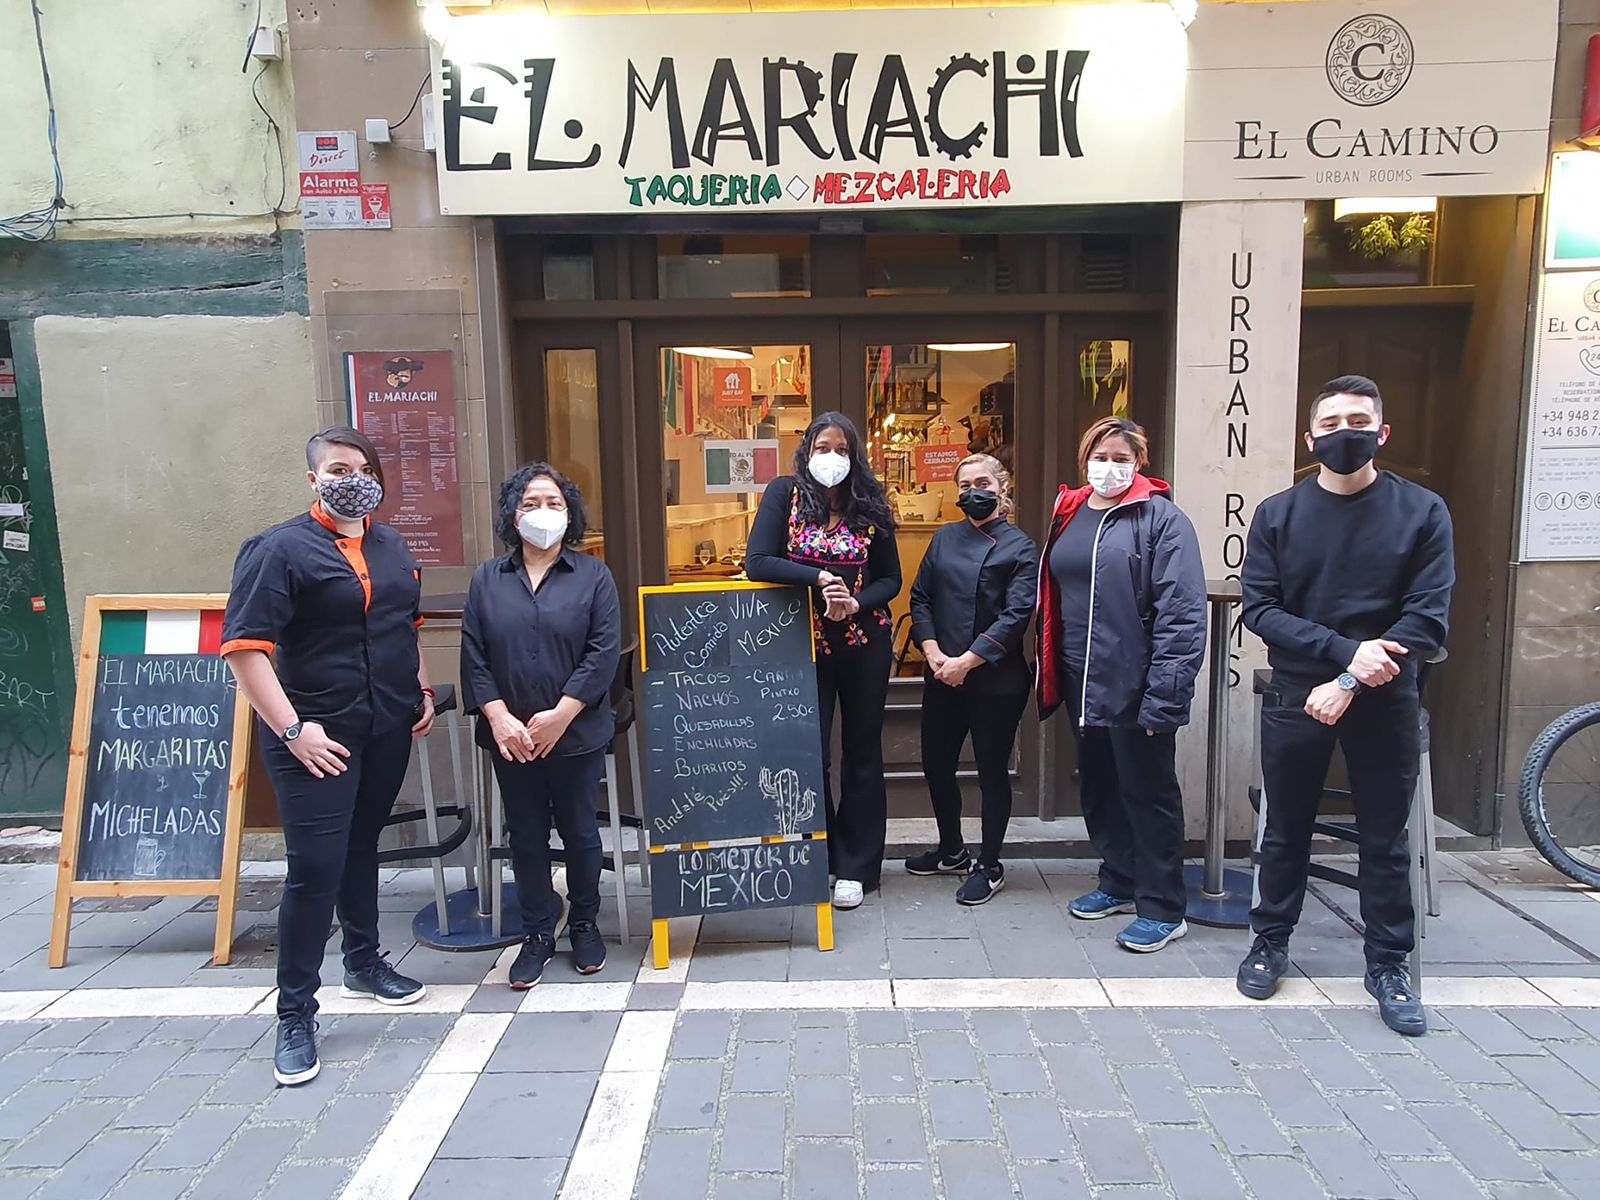 El Mariachi bar, taquería